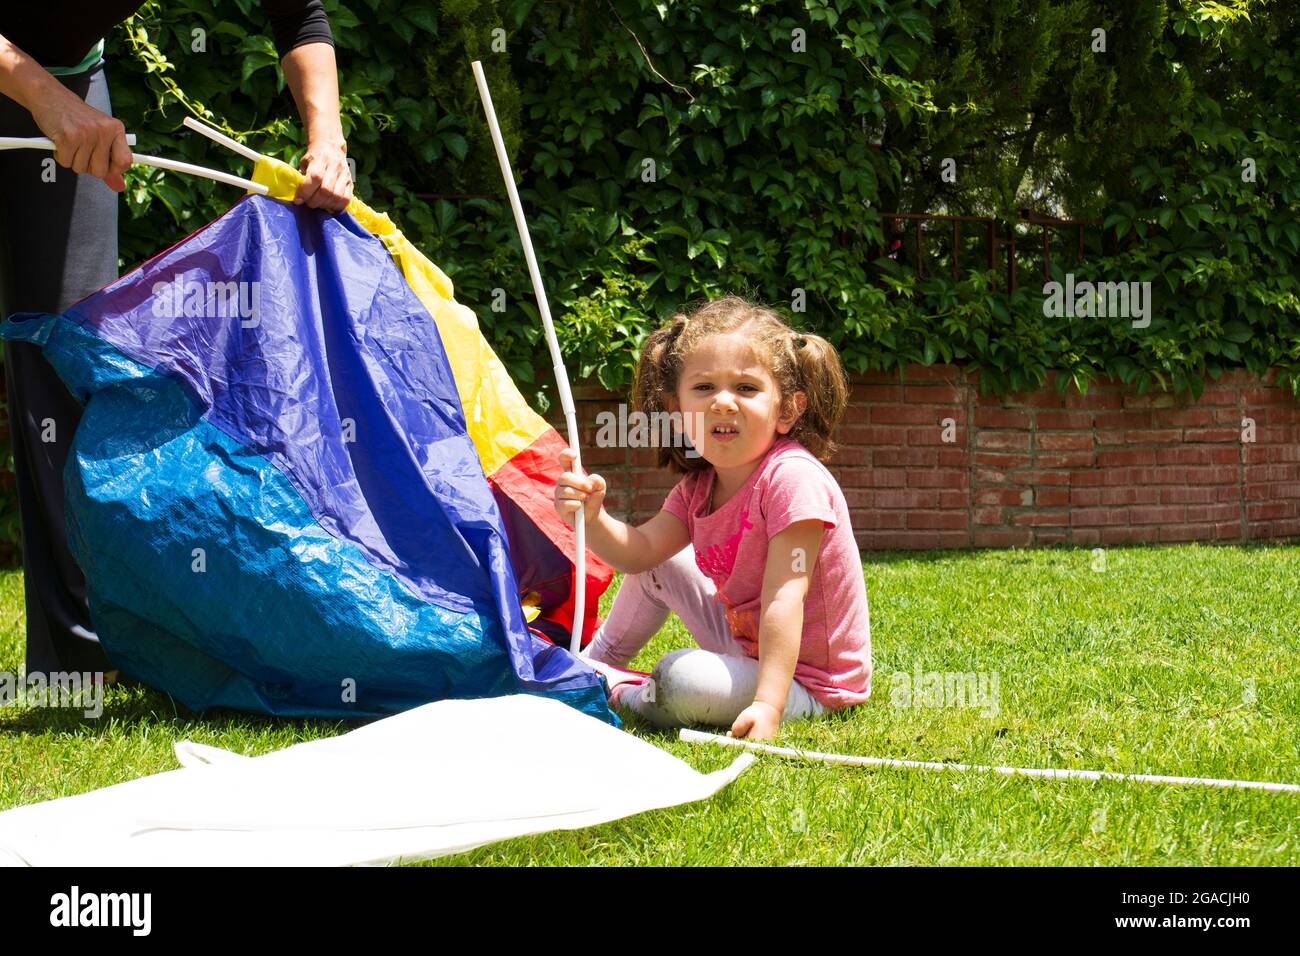 La ragazza e la madre stanno cercando di installare la tenda di gioco nel loro giardino. Foto Stock